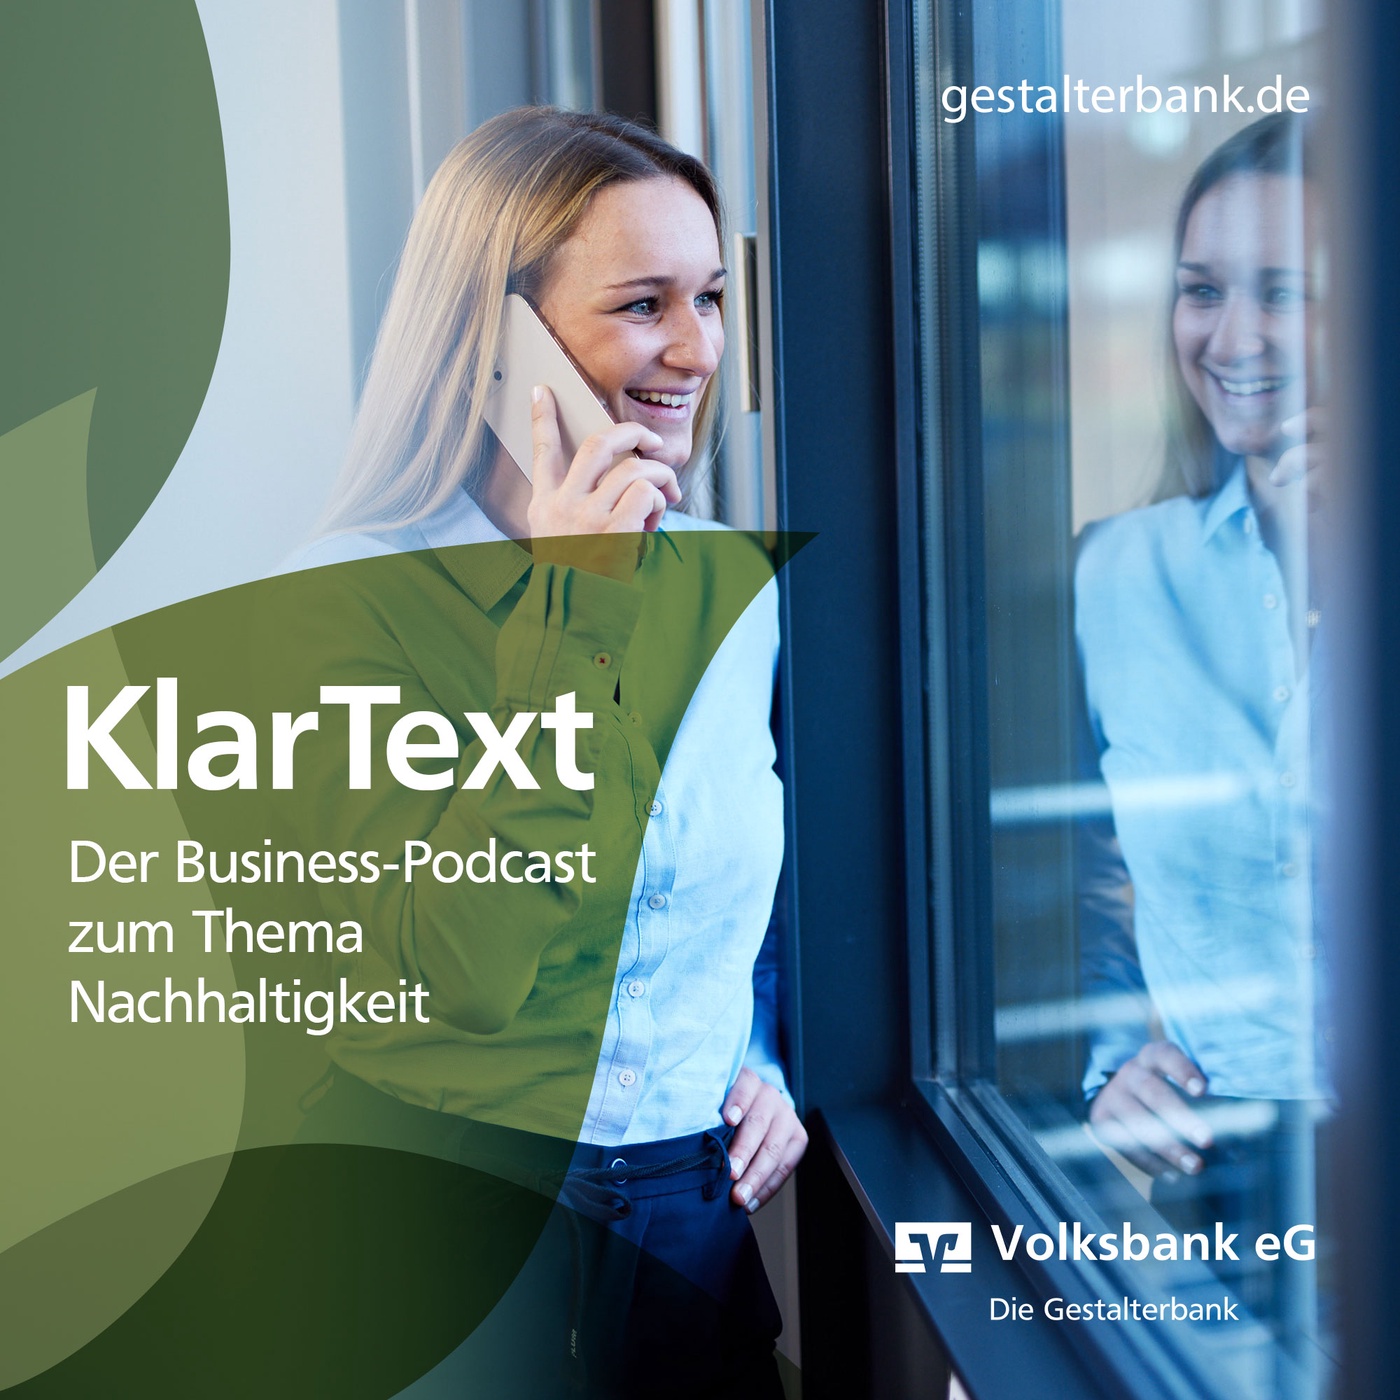 Episode 05: KlarText über Digitalisierung und Nachhaltigkeit mit Dr. Julia Mohrbacher